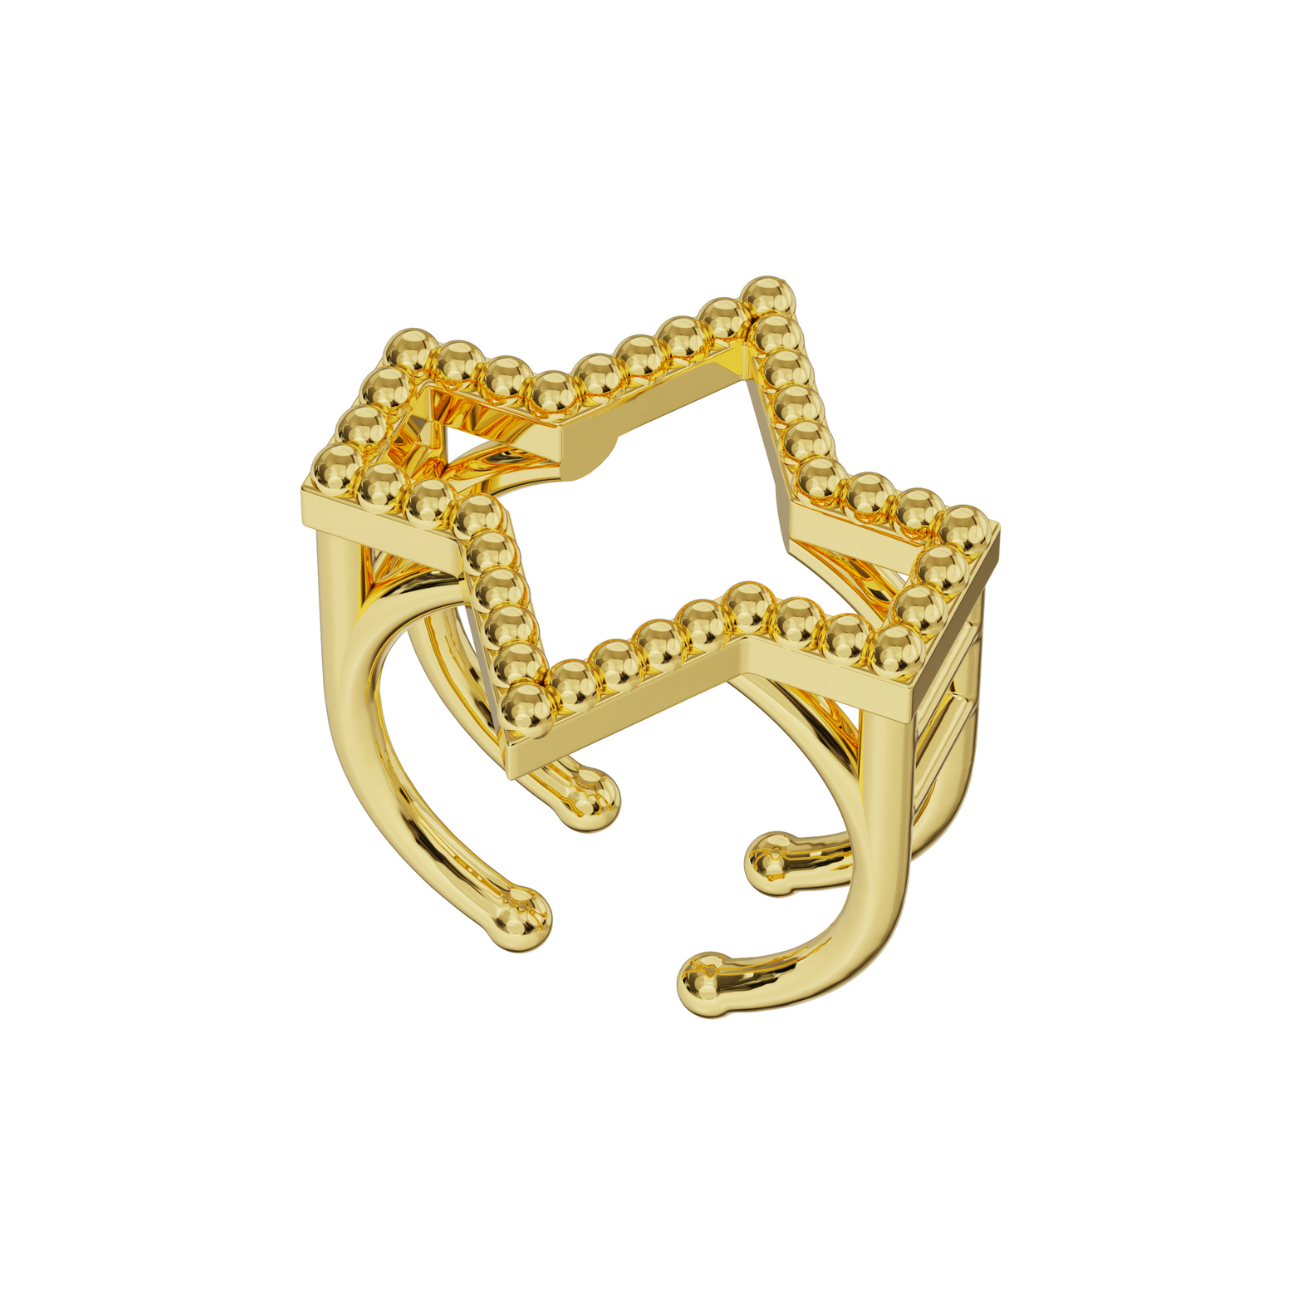 Starlite ring, 18k gold